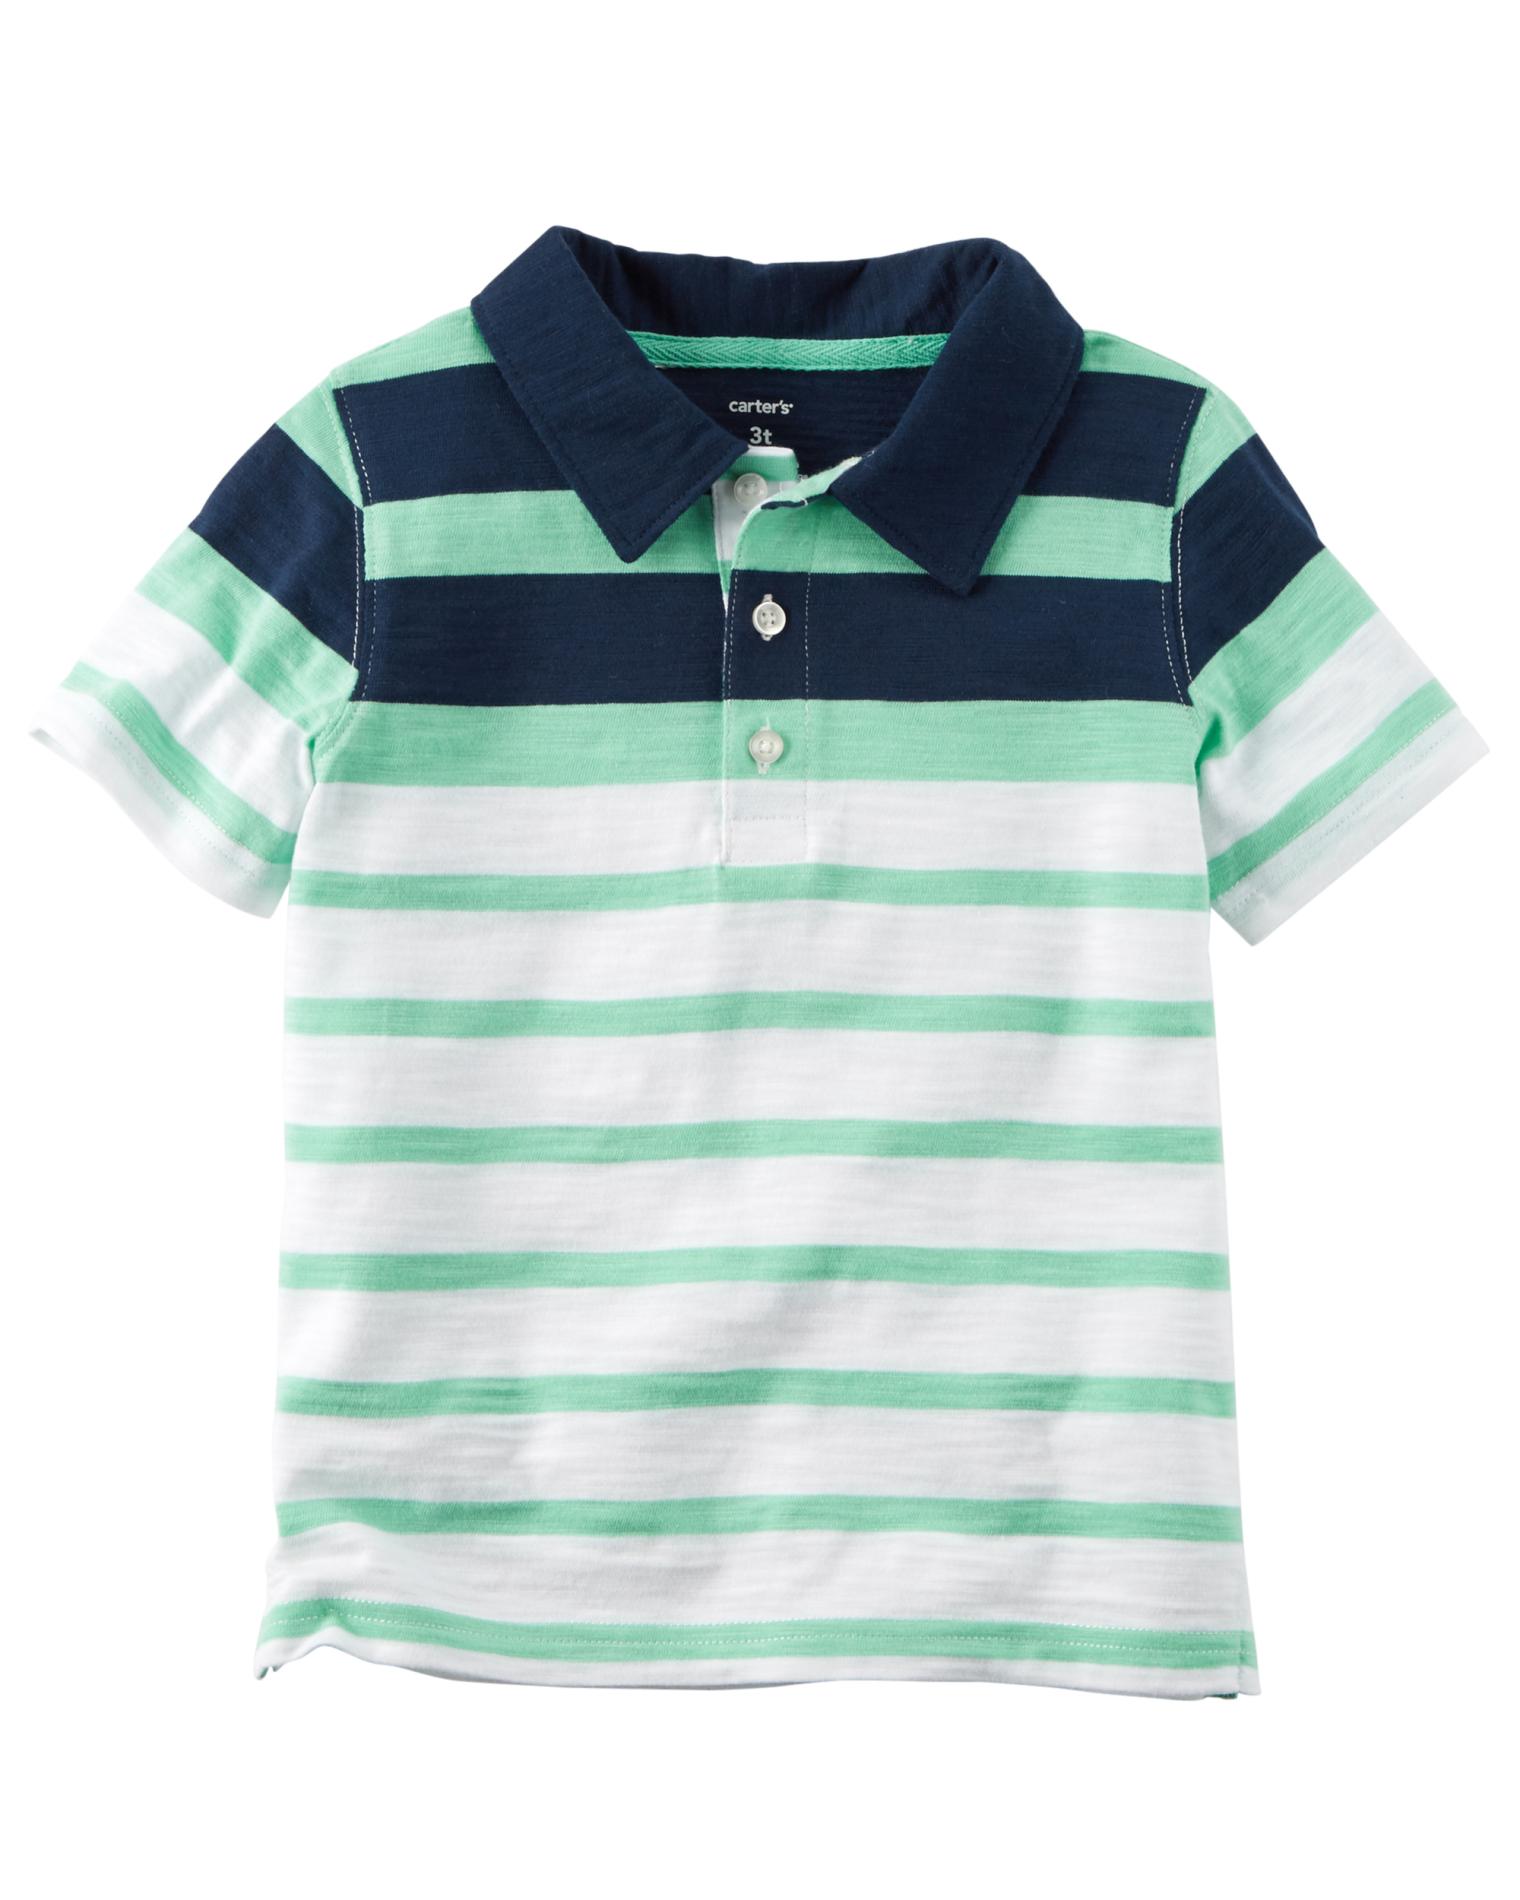 Carter's Toddler Boys' Polo Shirt - Striped - Sears